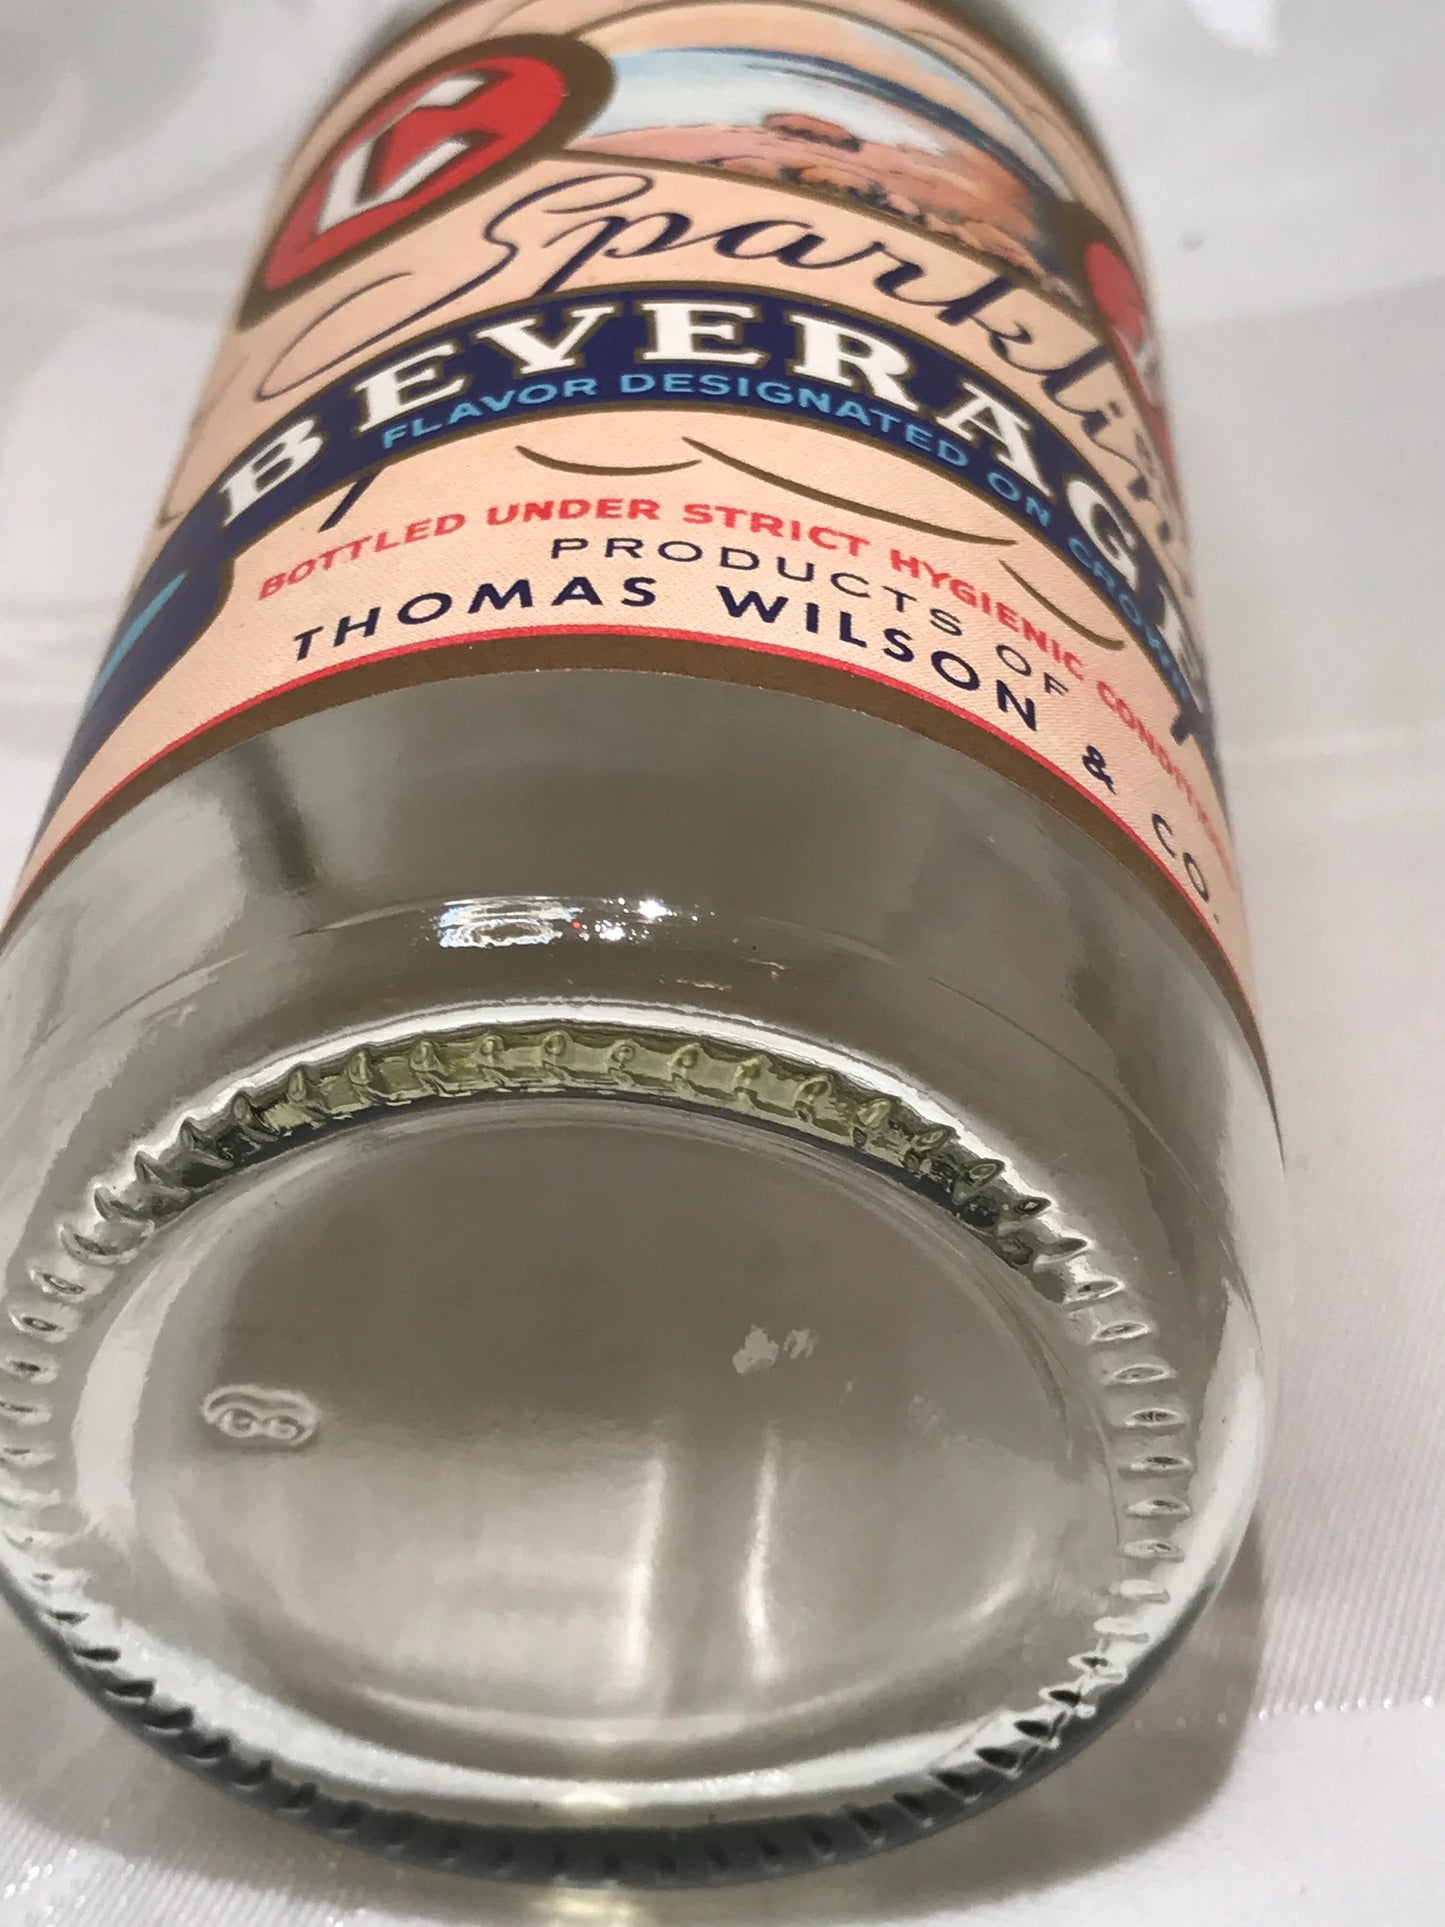 1930s Vintage C&A Sparkling Beverage Bottle